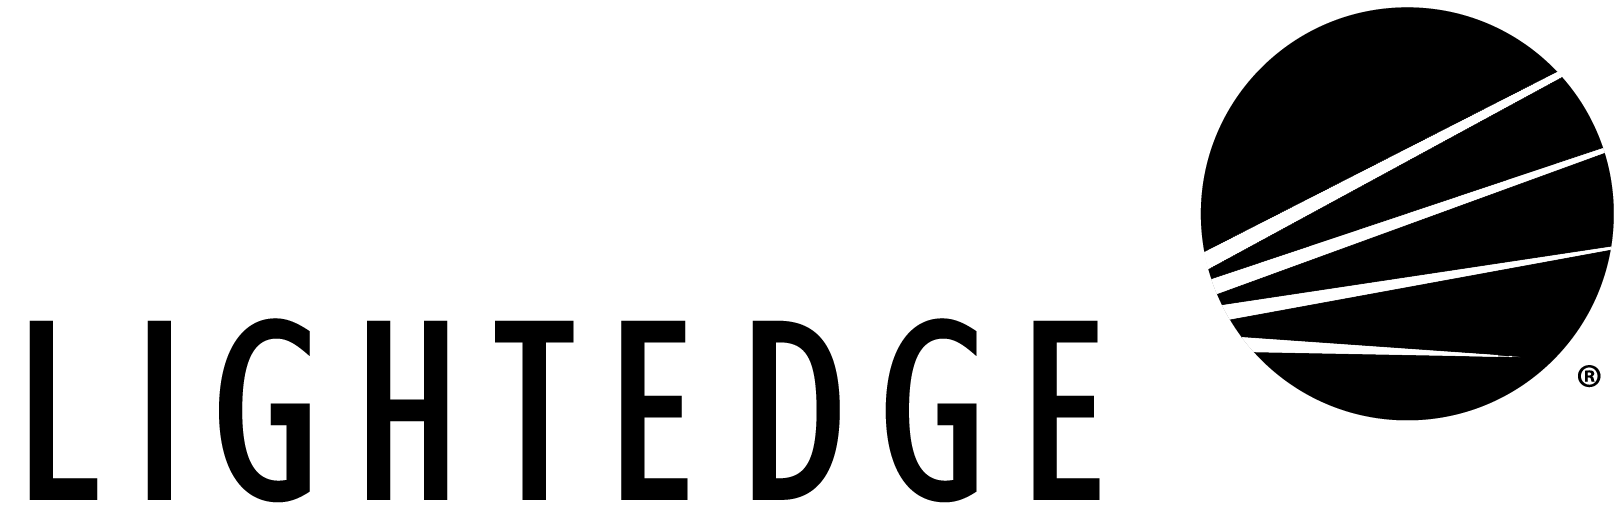 lightedge-logo.png